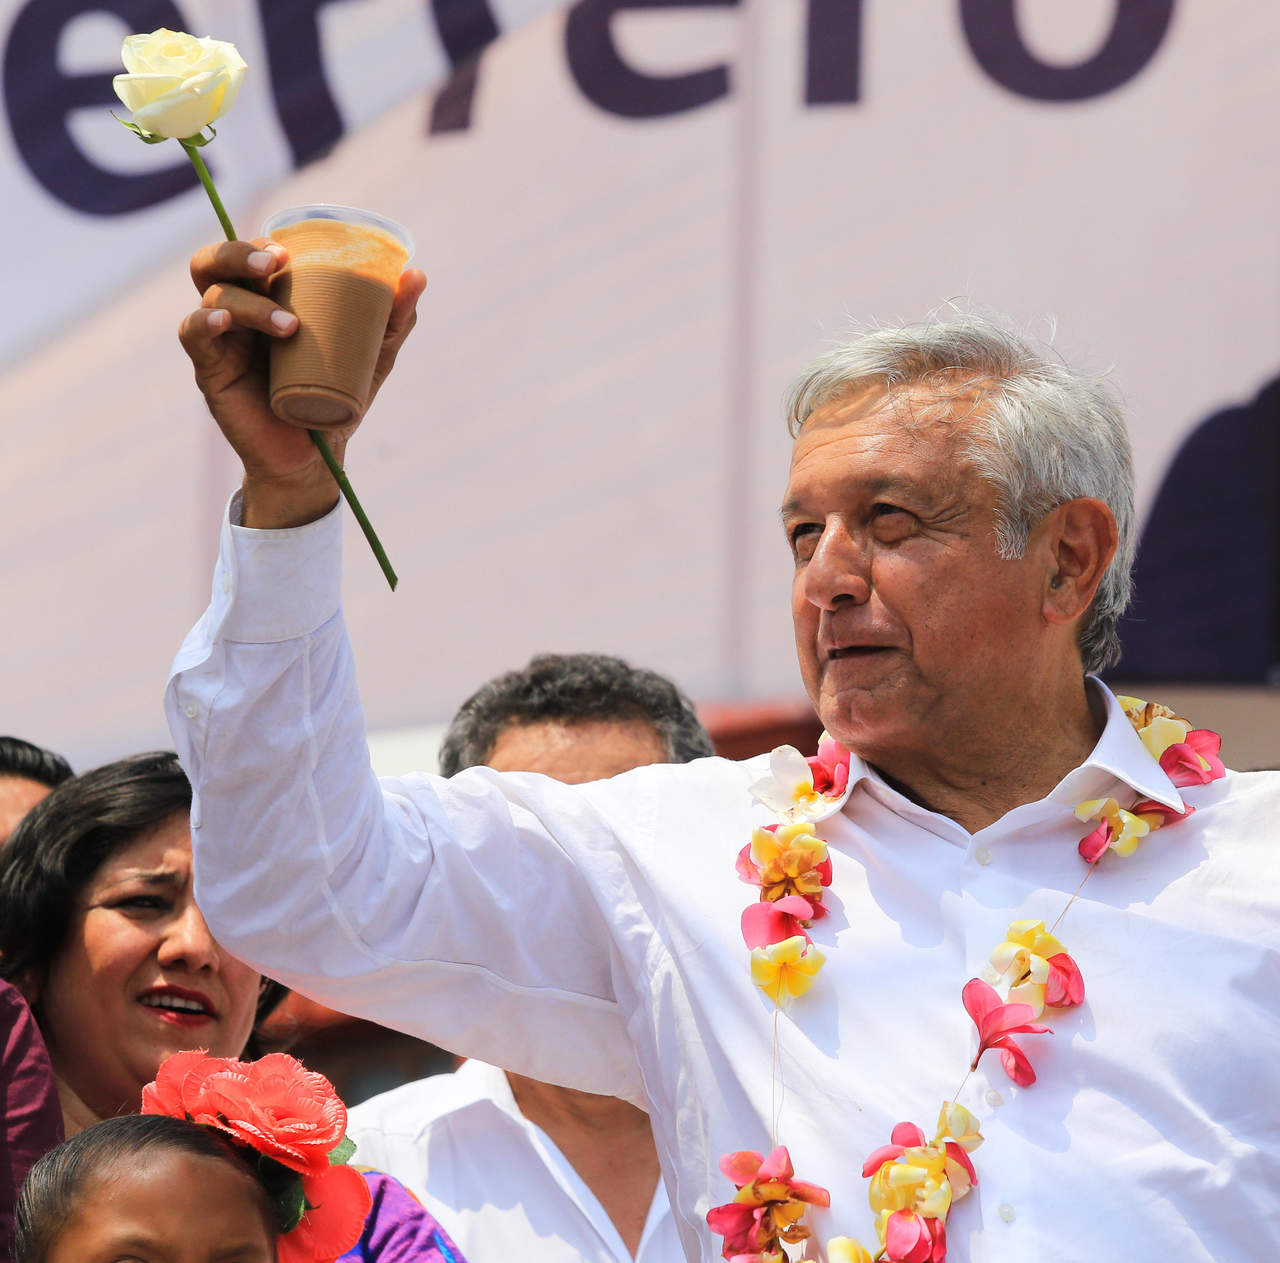 Durante las últimas horas, algunos medios locales y cuentas en redes sociales habían cuestionado que López Obrador, de 64 años, se encontrara en un estado de salud óptimo para asumir el puesto por el que contiende durante los seis años que dura el mandato.